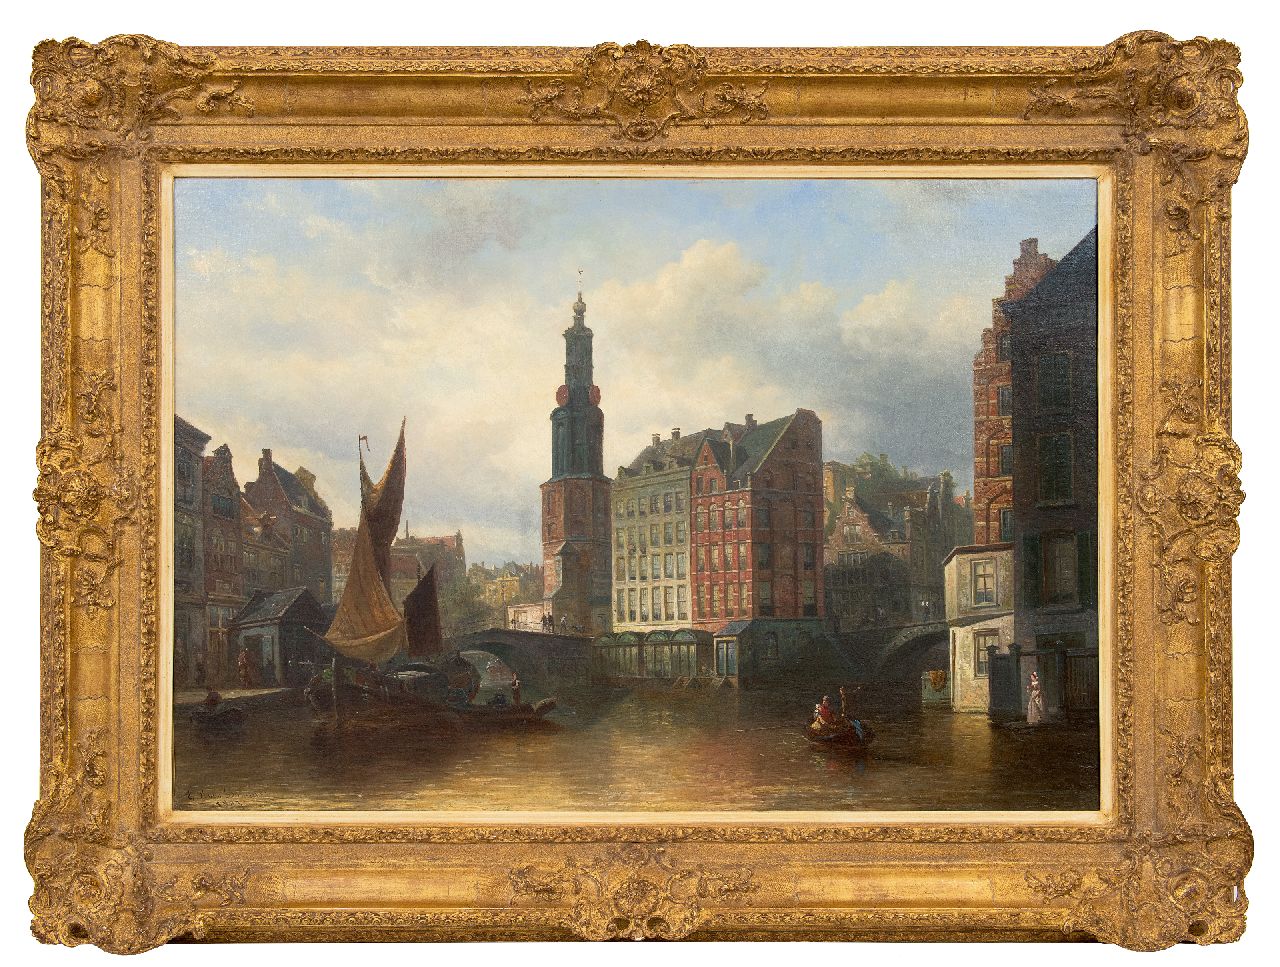 Bommel E.P. van | Elias Pieter van Bommel | Schilderijen te koop aangeboden | Gezicht op de Munttoren, Amsterdam, olieverf op doek 63,3 x 92,7 cm, gesigneerd linksonder en gedateerd 1883